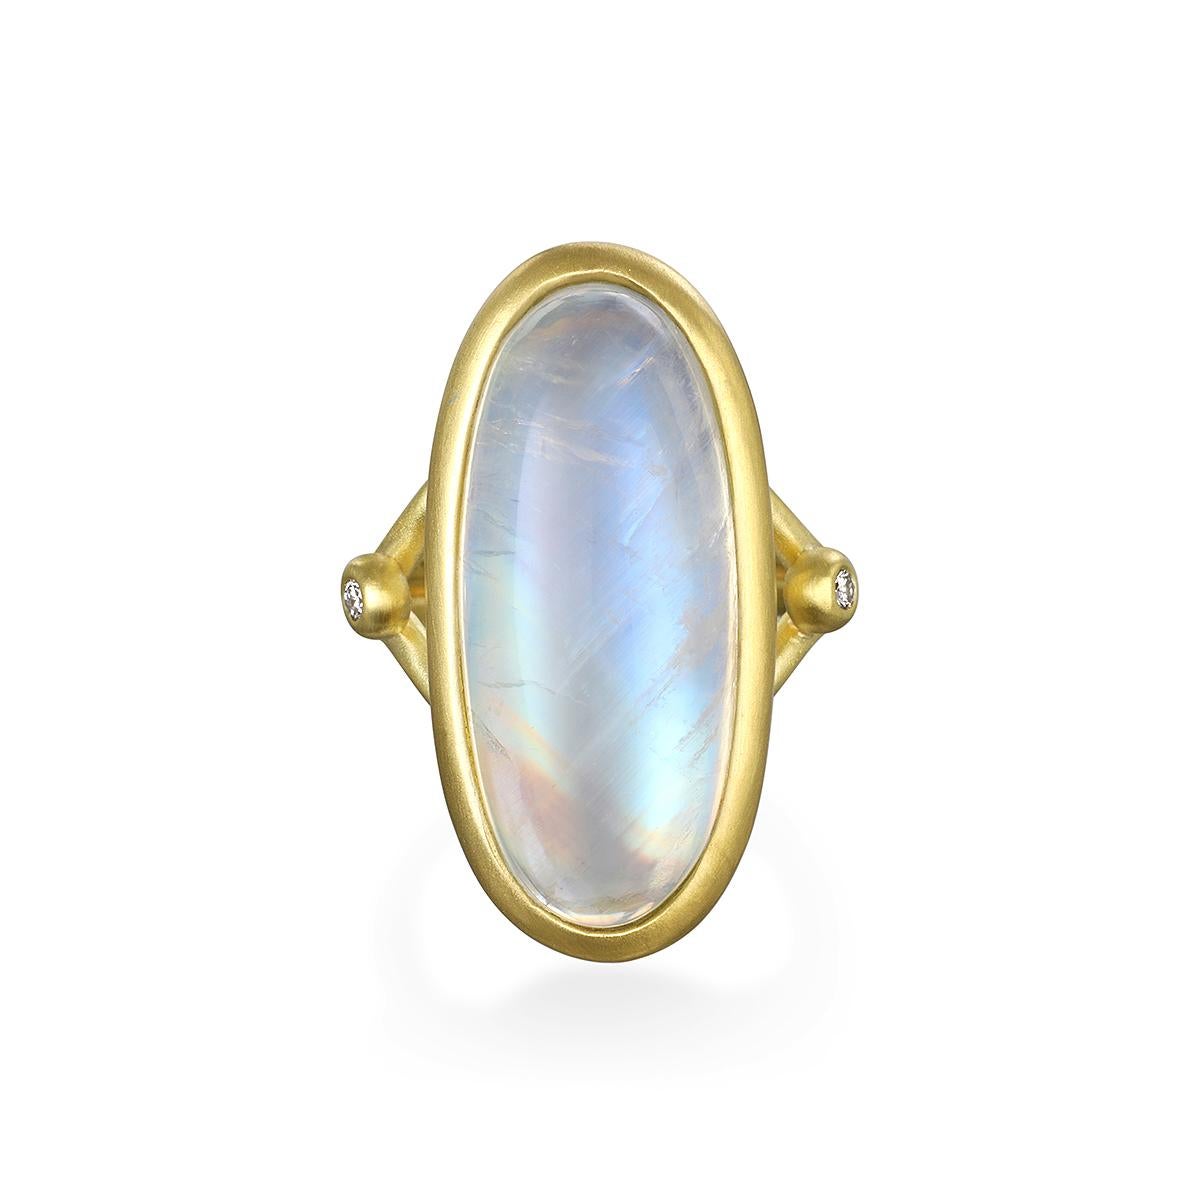 Dieser runde Regenbogenmondstein mit seinen zwei seitlichen Diamanten wurde von der Designerin Faye Kim in 18 Karat Gold* gefasst und reflektiert ein bläuliches, milchiges Licht, das mit dem Licht des Mondes verglichen wird. Die Form, der Schliff